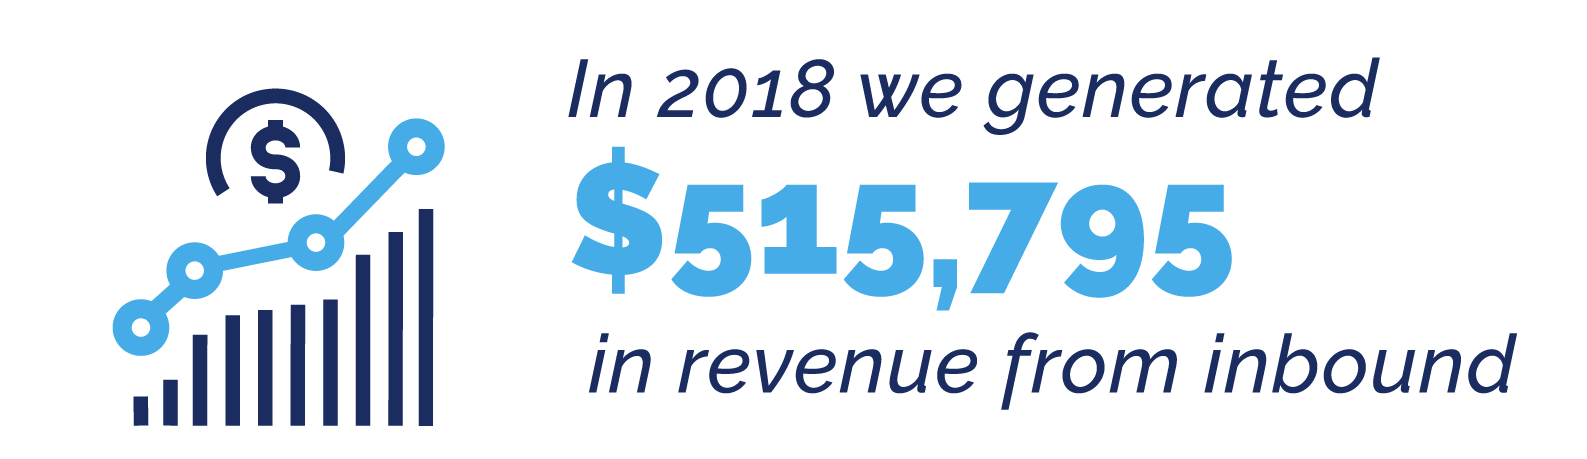 $515,795 from Inbound Revenue in 2018